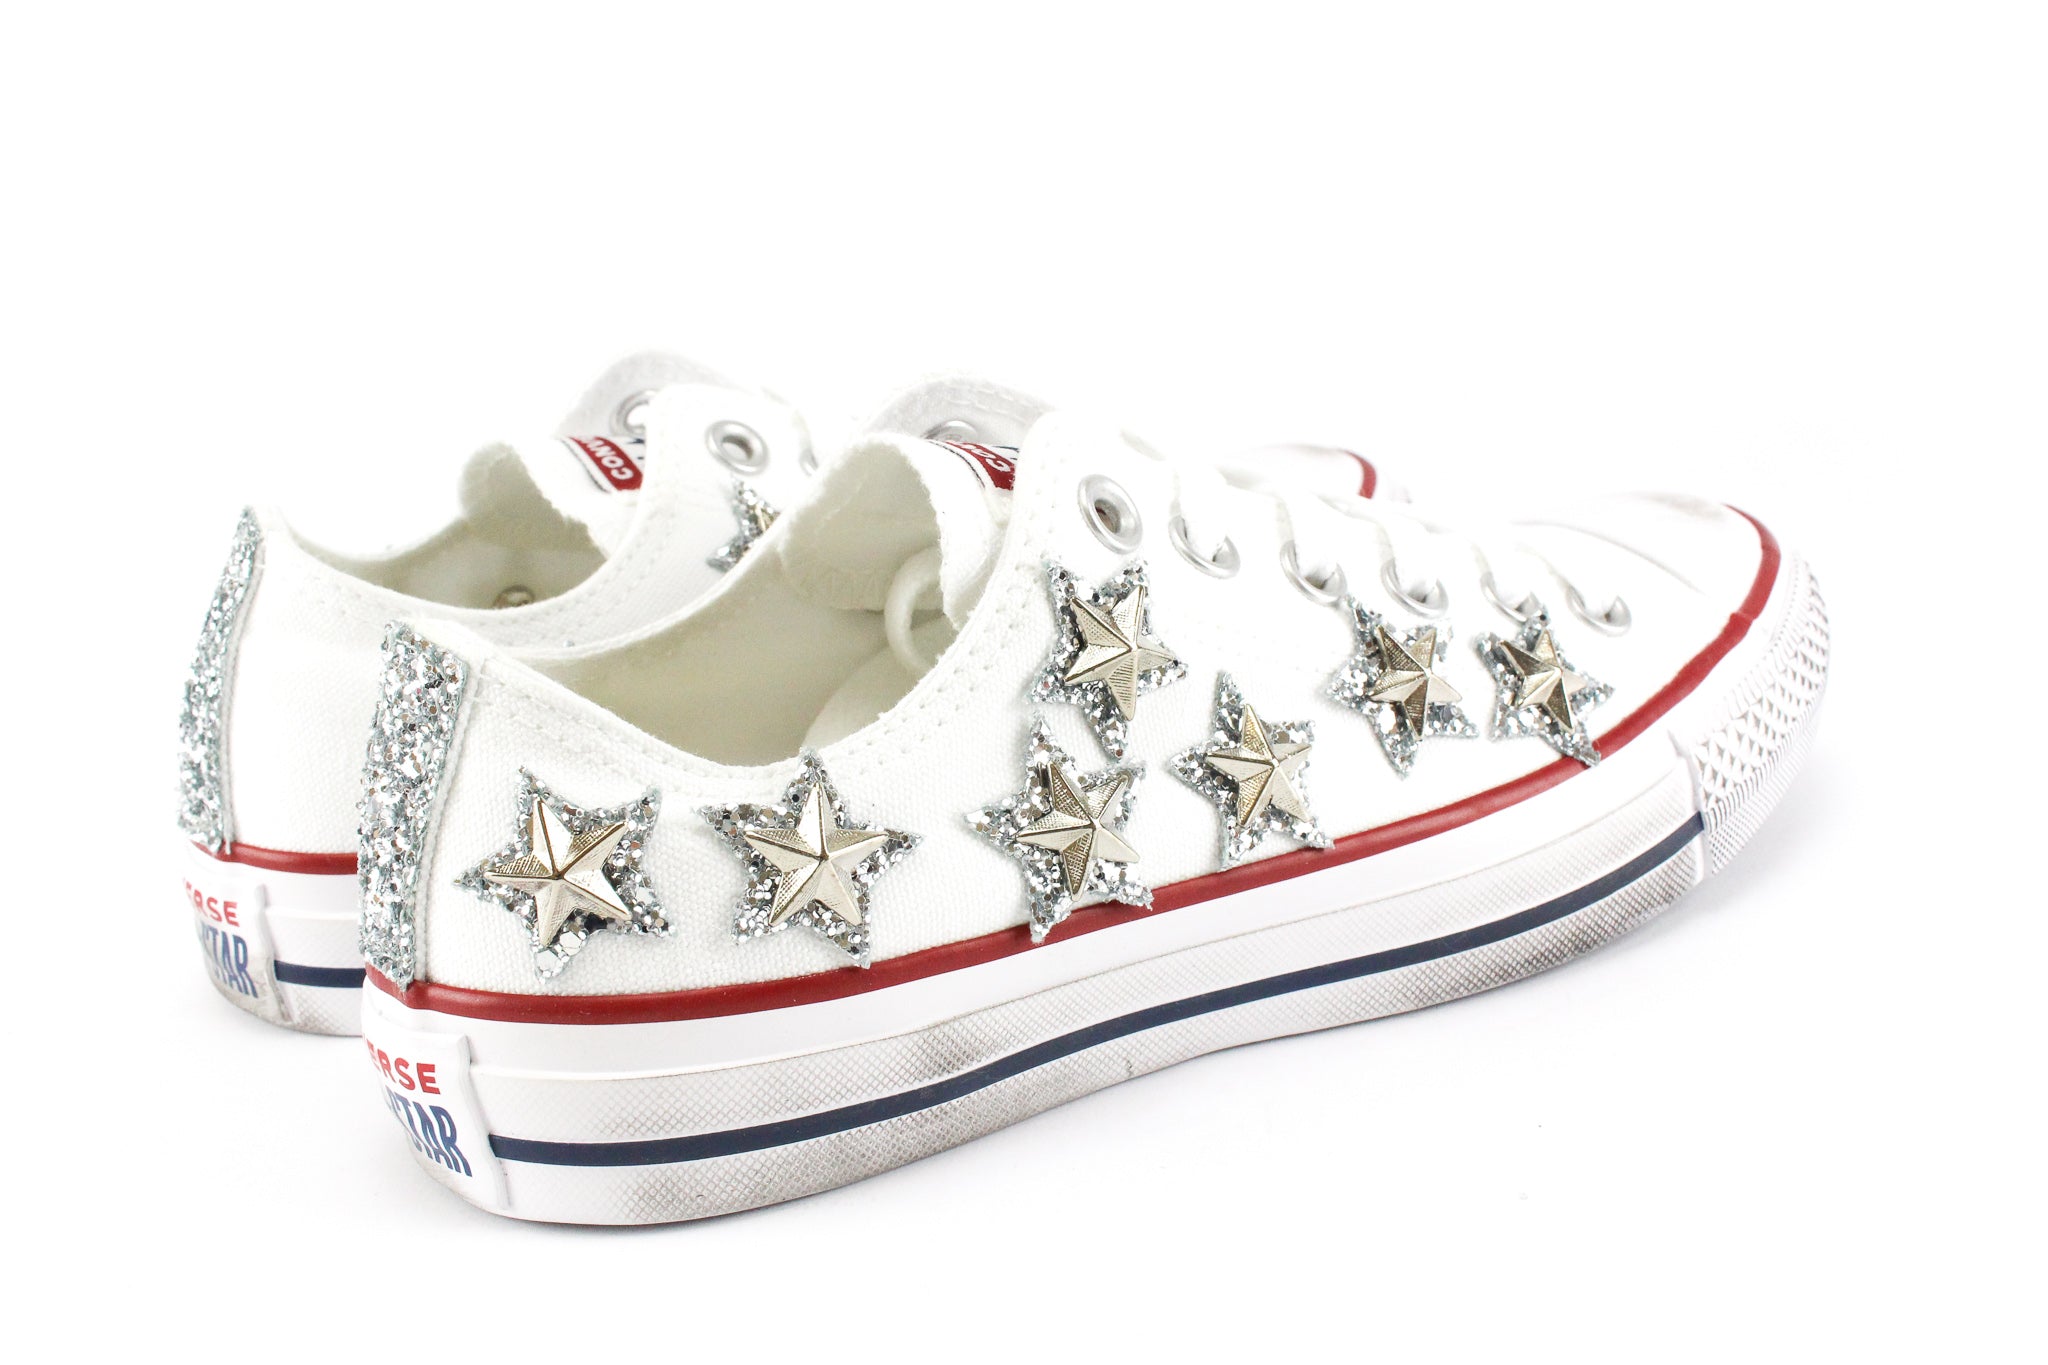 Converse All Star White Stars Glitter Silver